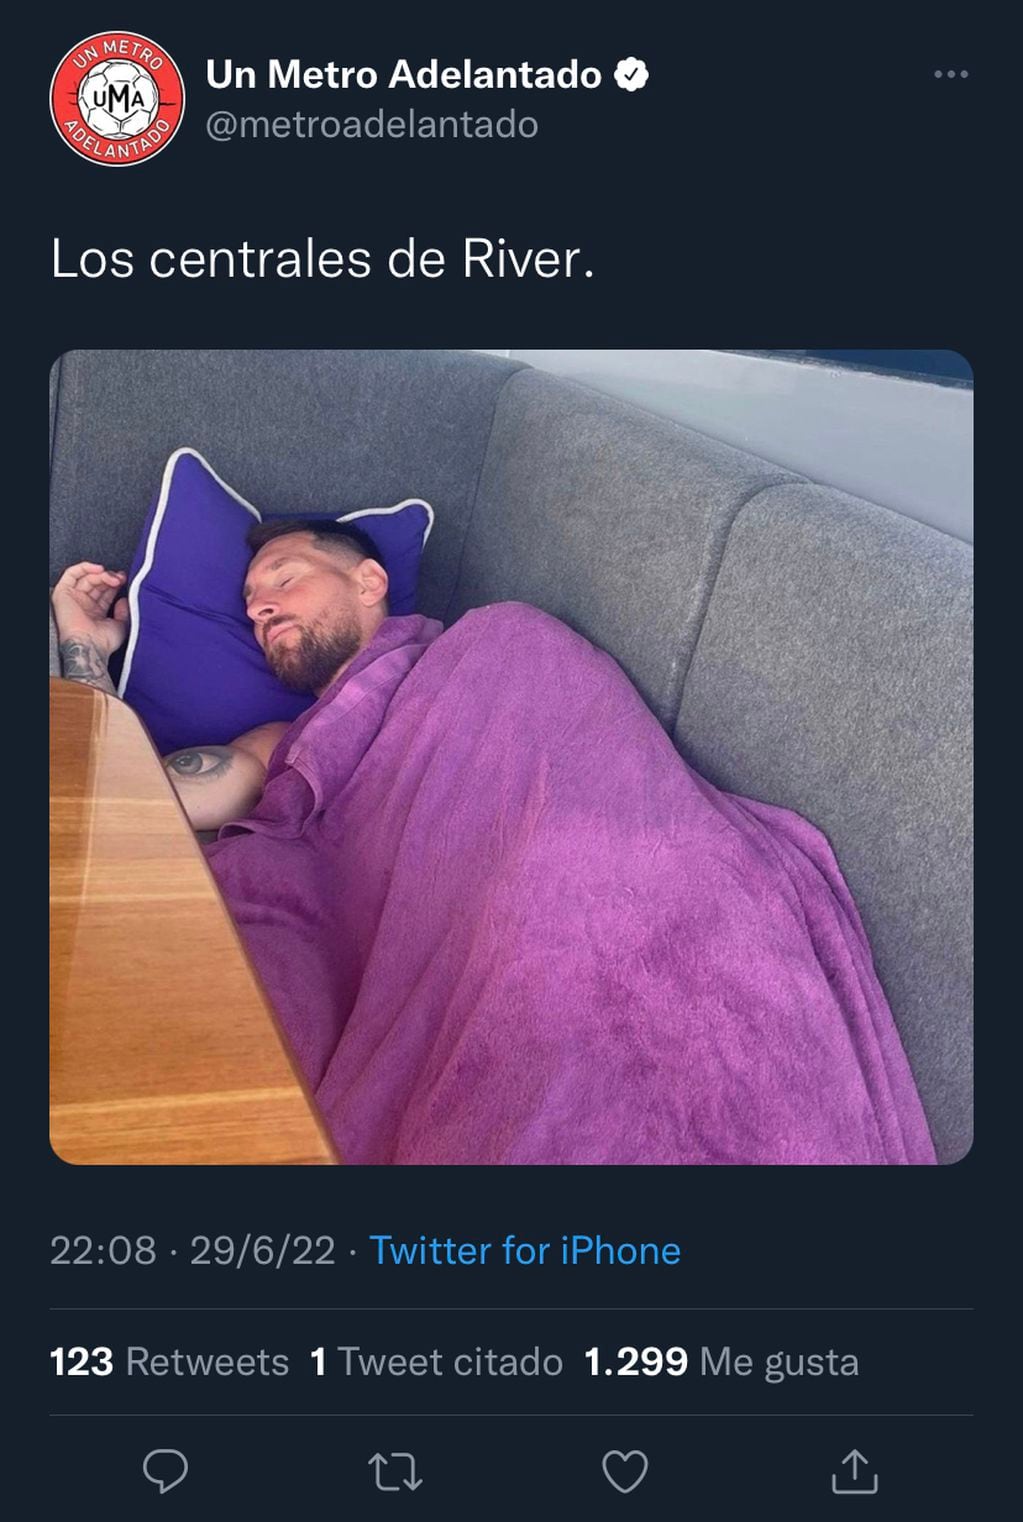 El usuario @metroadelantado usó una imagen de Messi para hacer alusión al mal partido de los centrales de River.